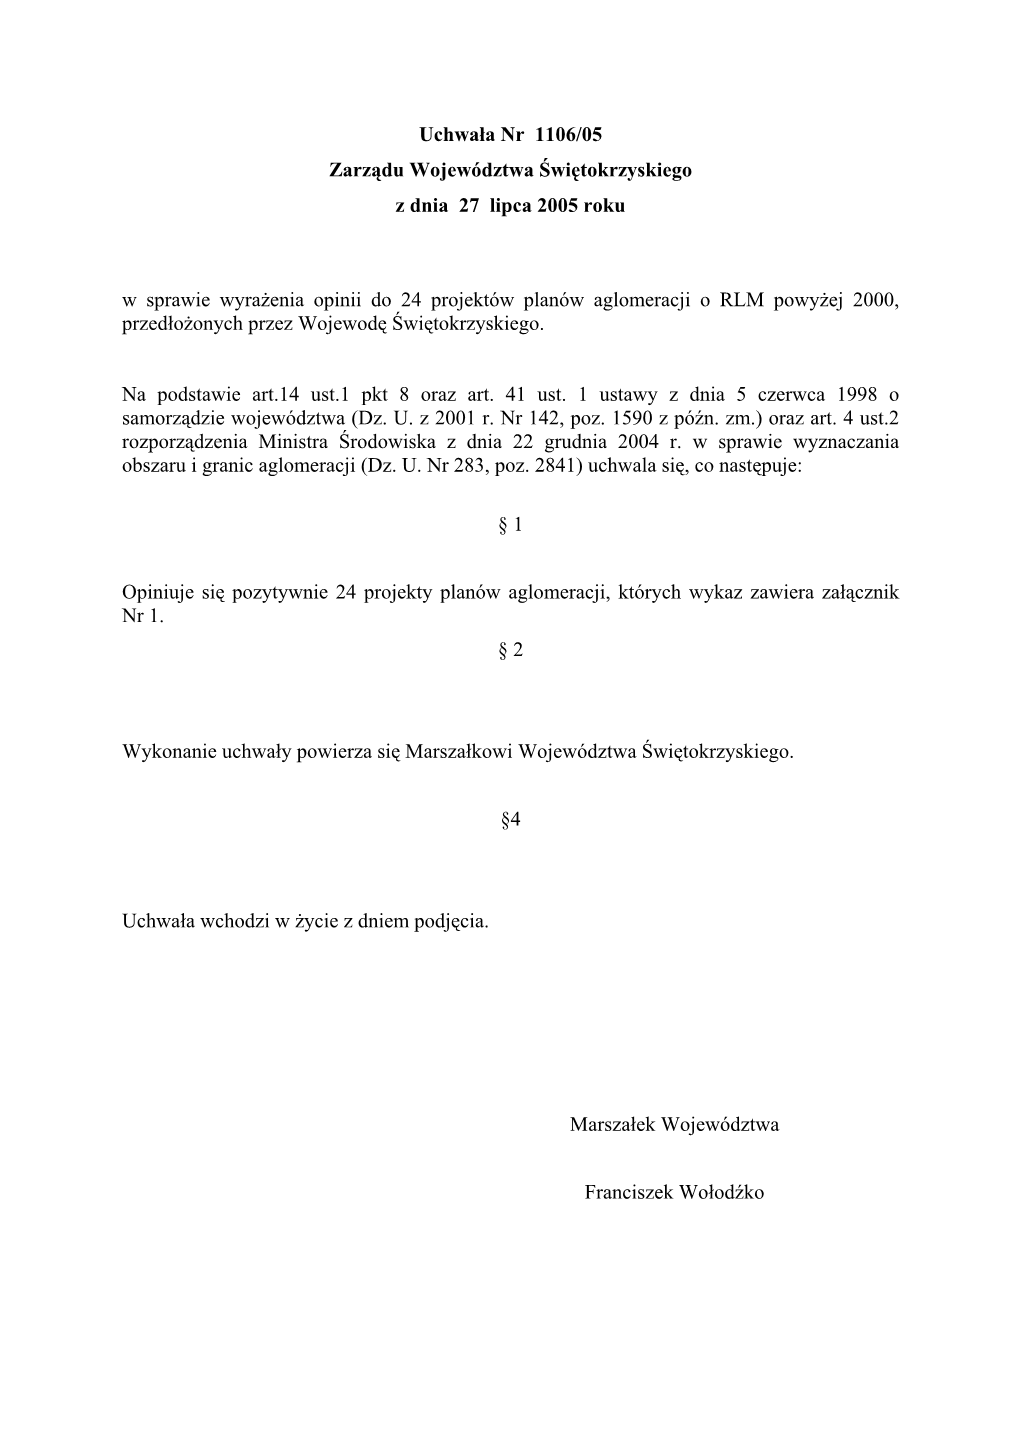 Uchwała Nr 1106/05 Zarządu Województwa Świętokrzyskiego Z Dnia 27 Lipca 2005 Roku